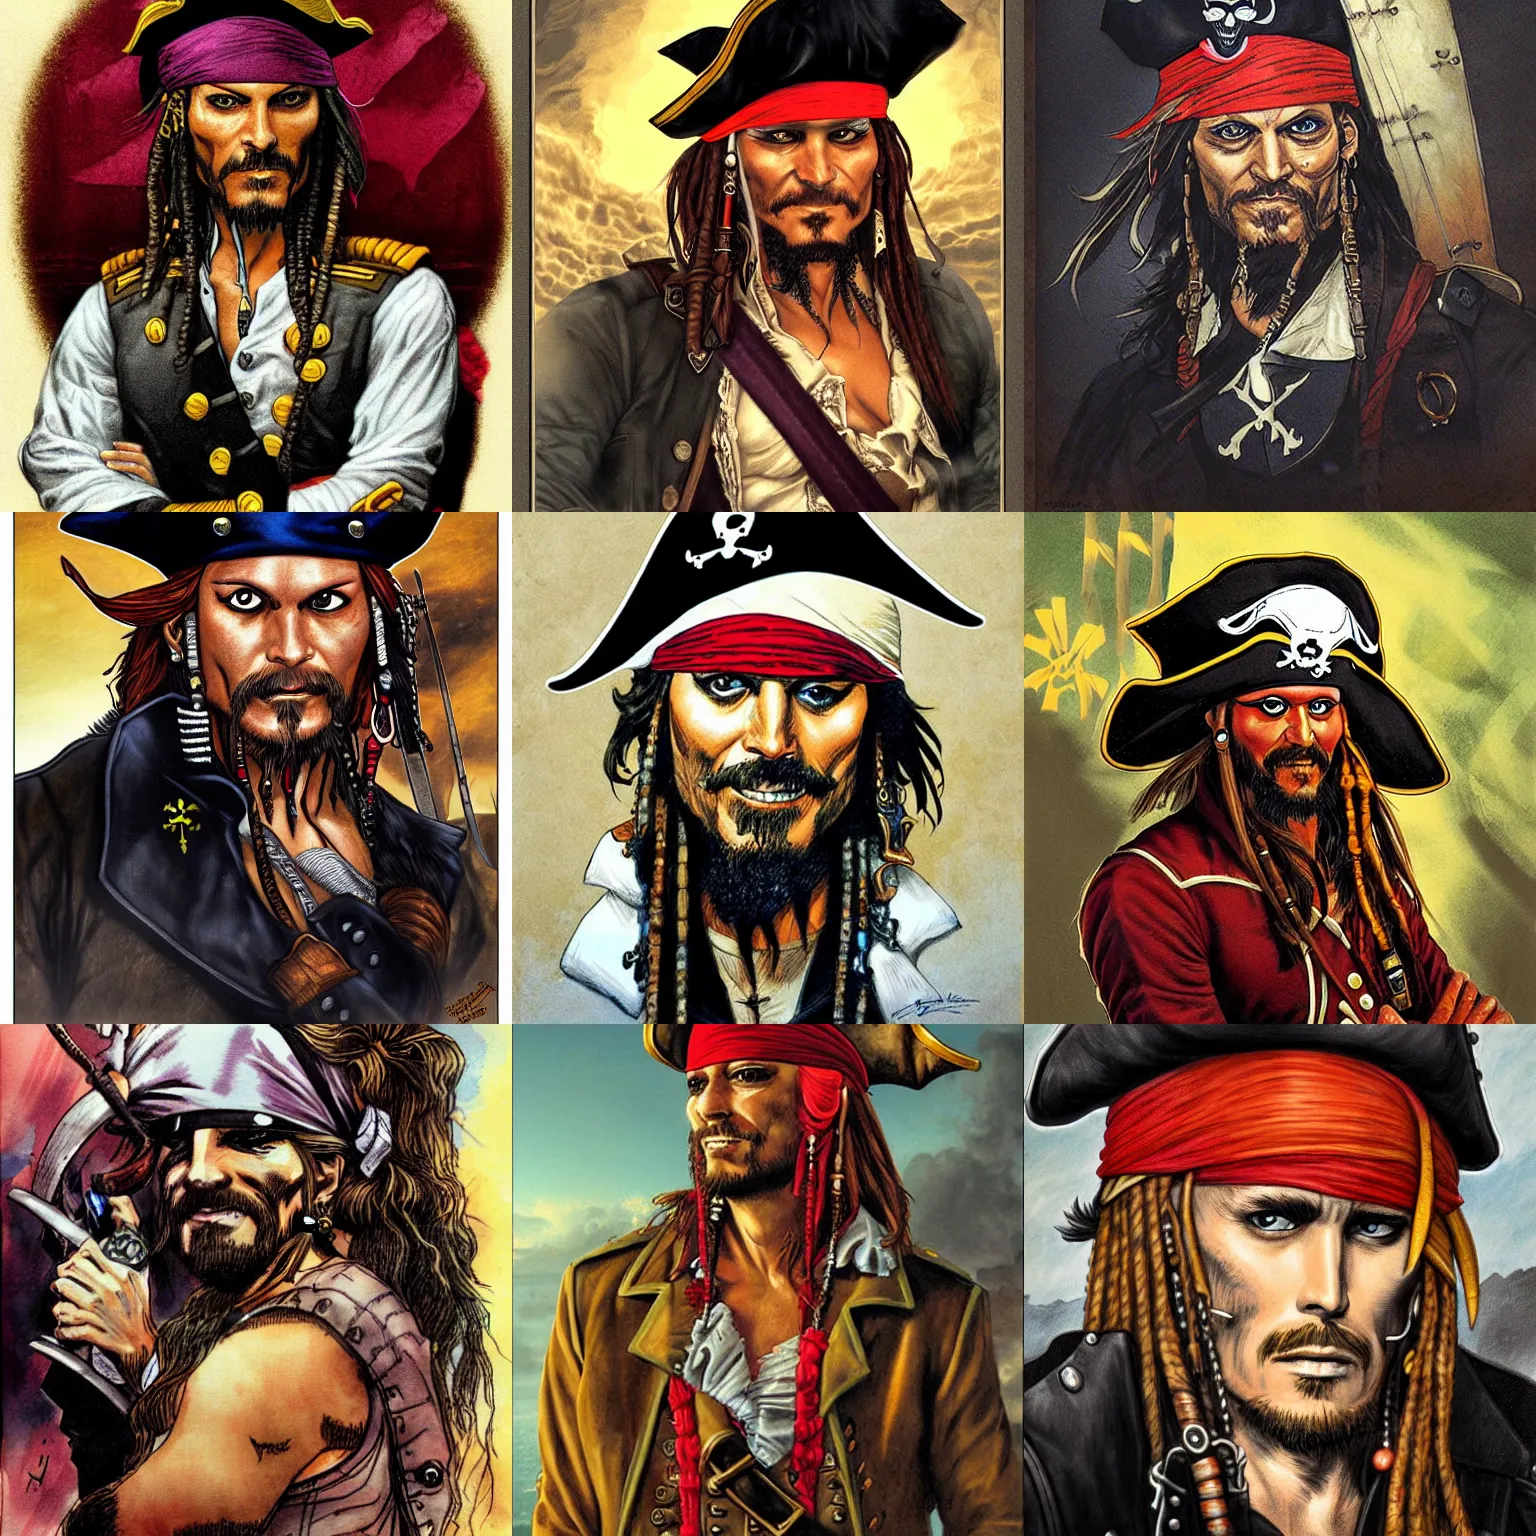 Prompt: pirate captain portrait by juan gimenez